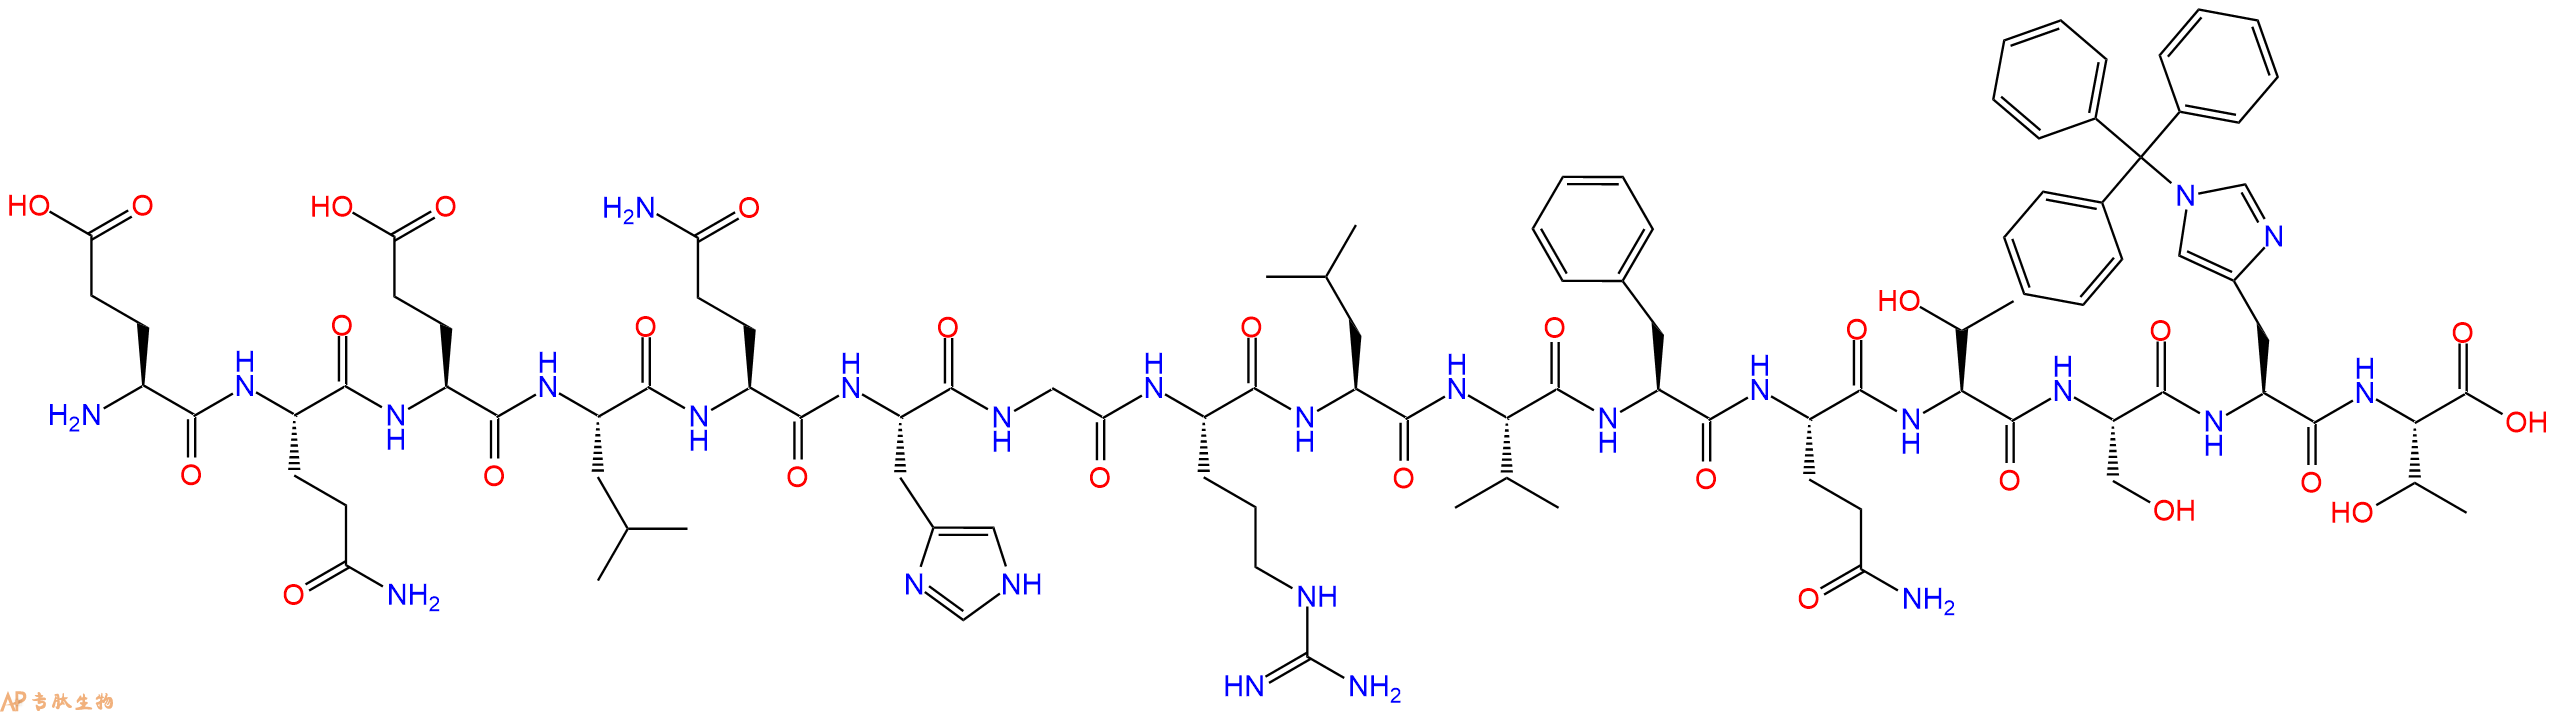 专肽生物产品H2N-Glu-Gln-Glu-Leu-Gln-His-Gly-Arg-Leu-Val-Phe-Gl